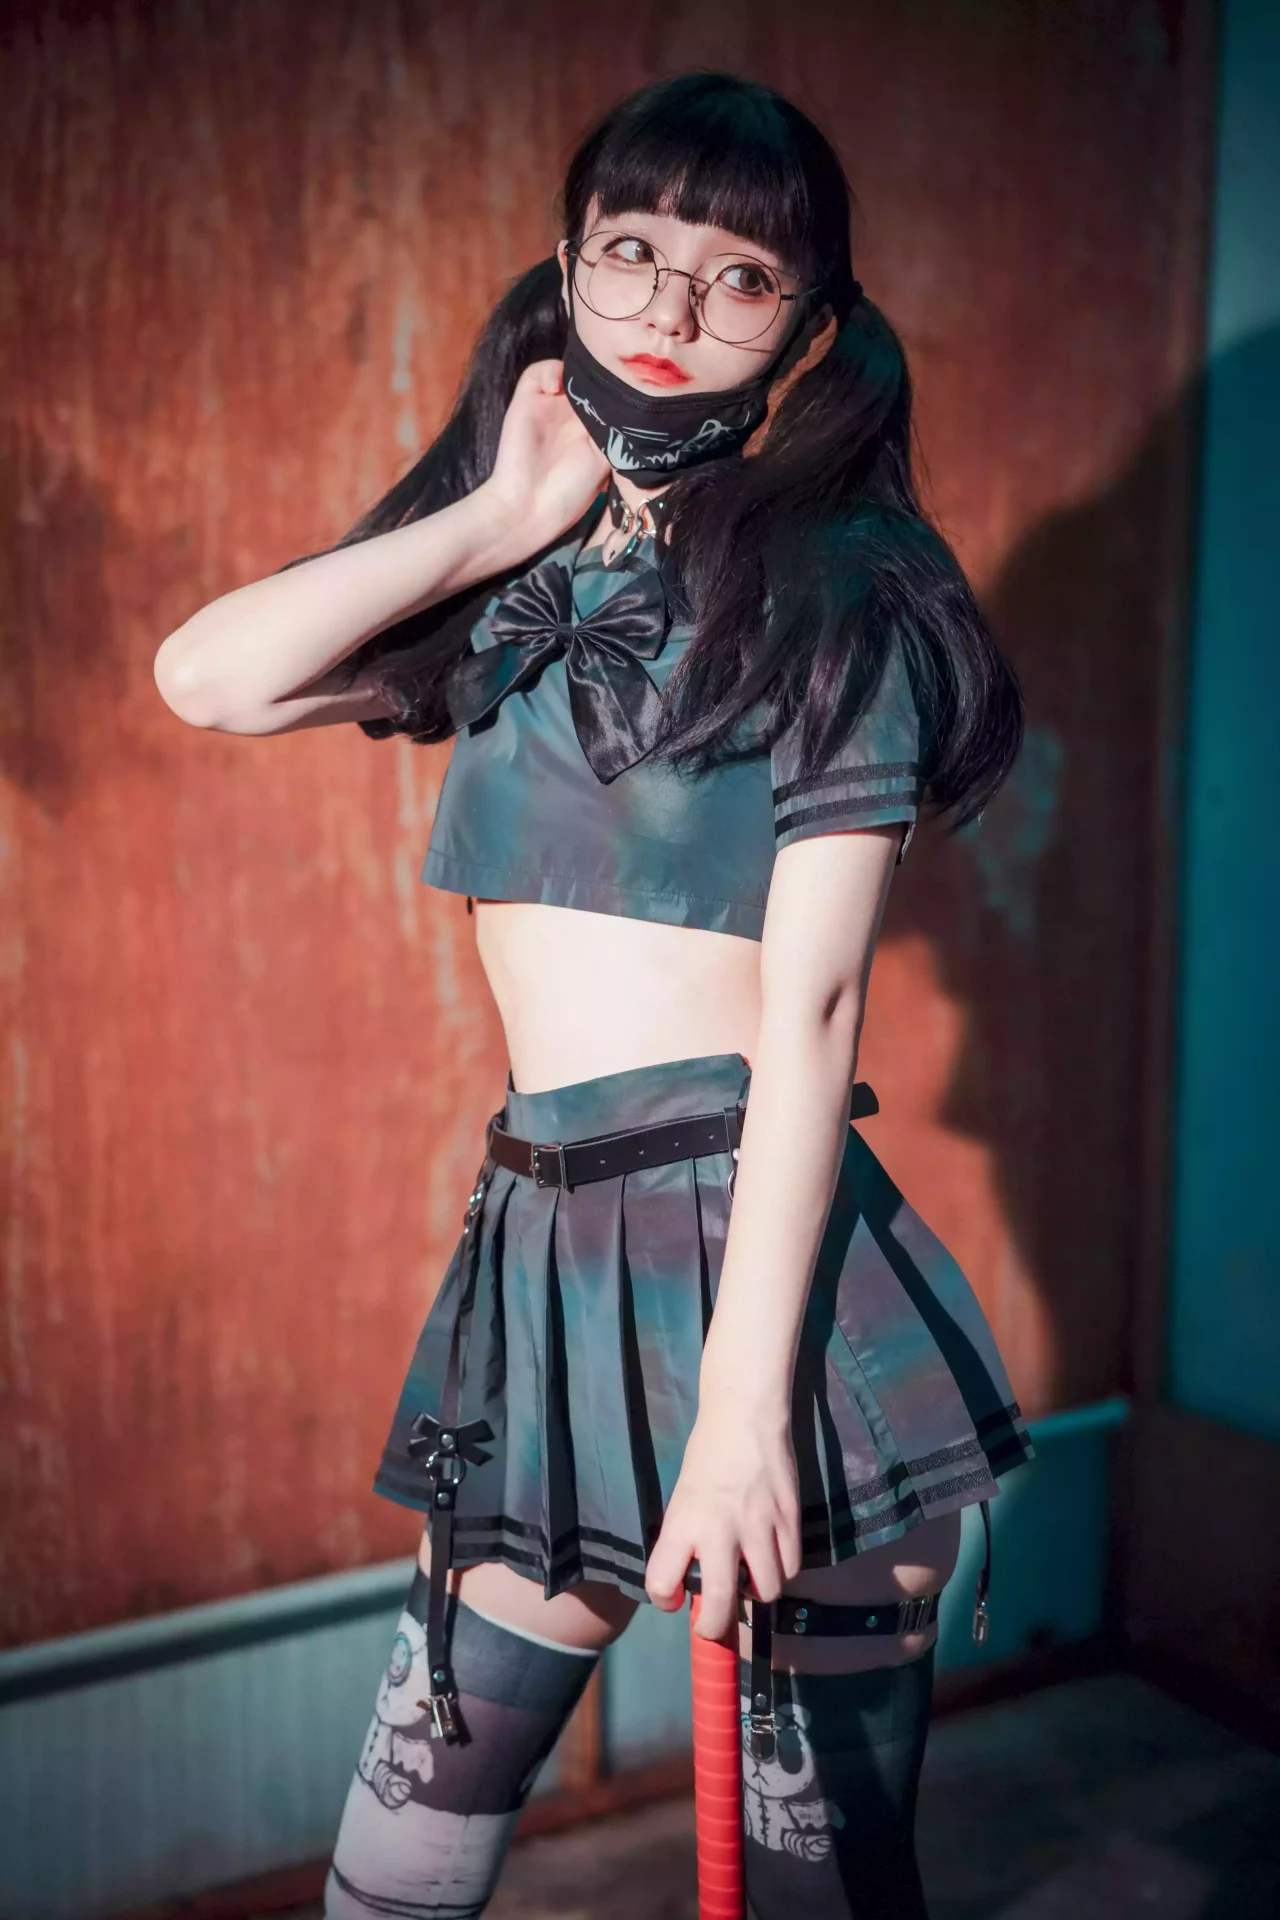 图片[18]-Jenny (정제니)The Smashing Sailorette 美女写真图片欣赏 - coser福利社-coser福利社